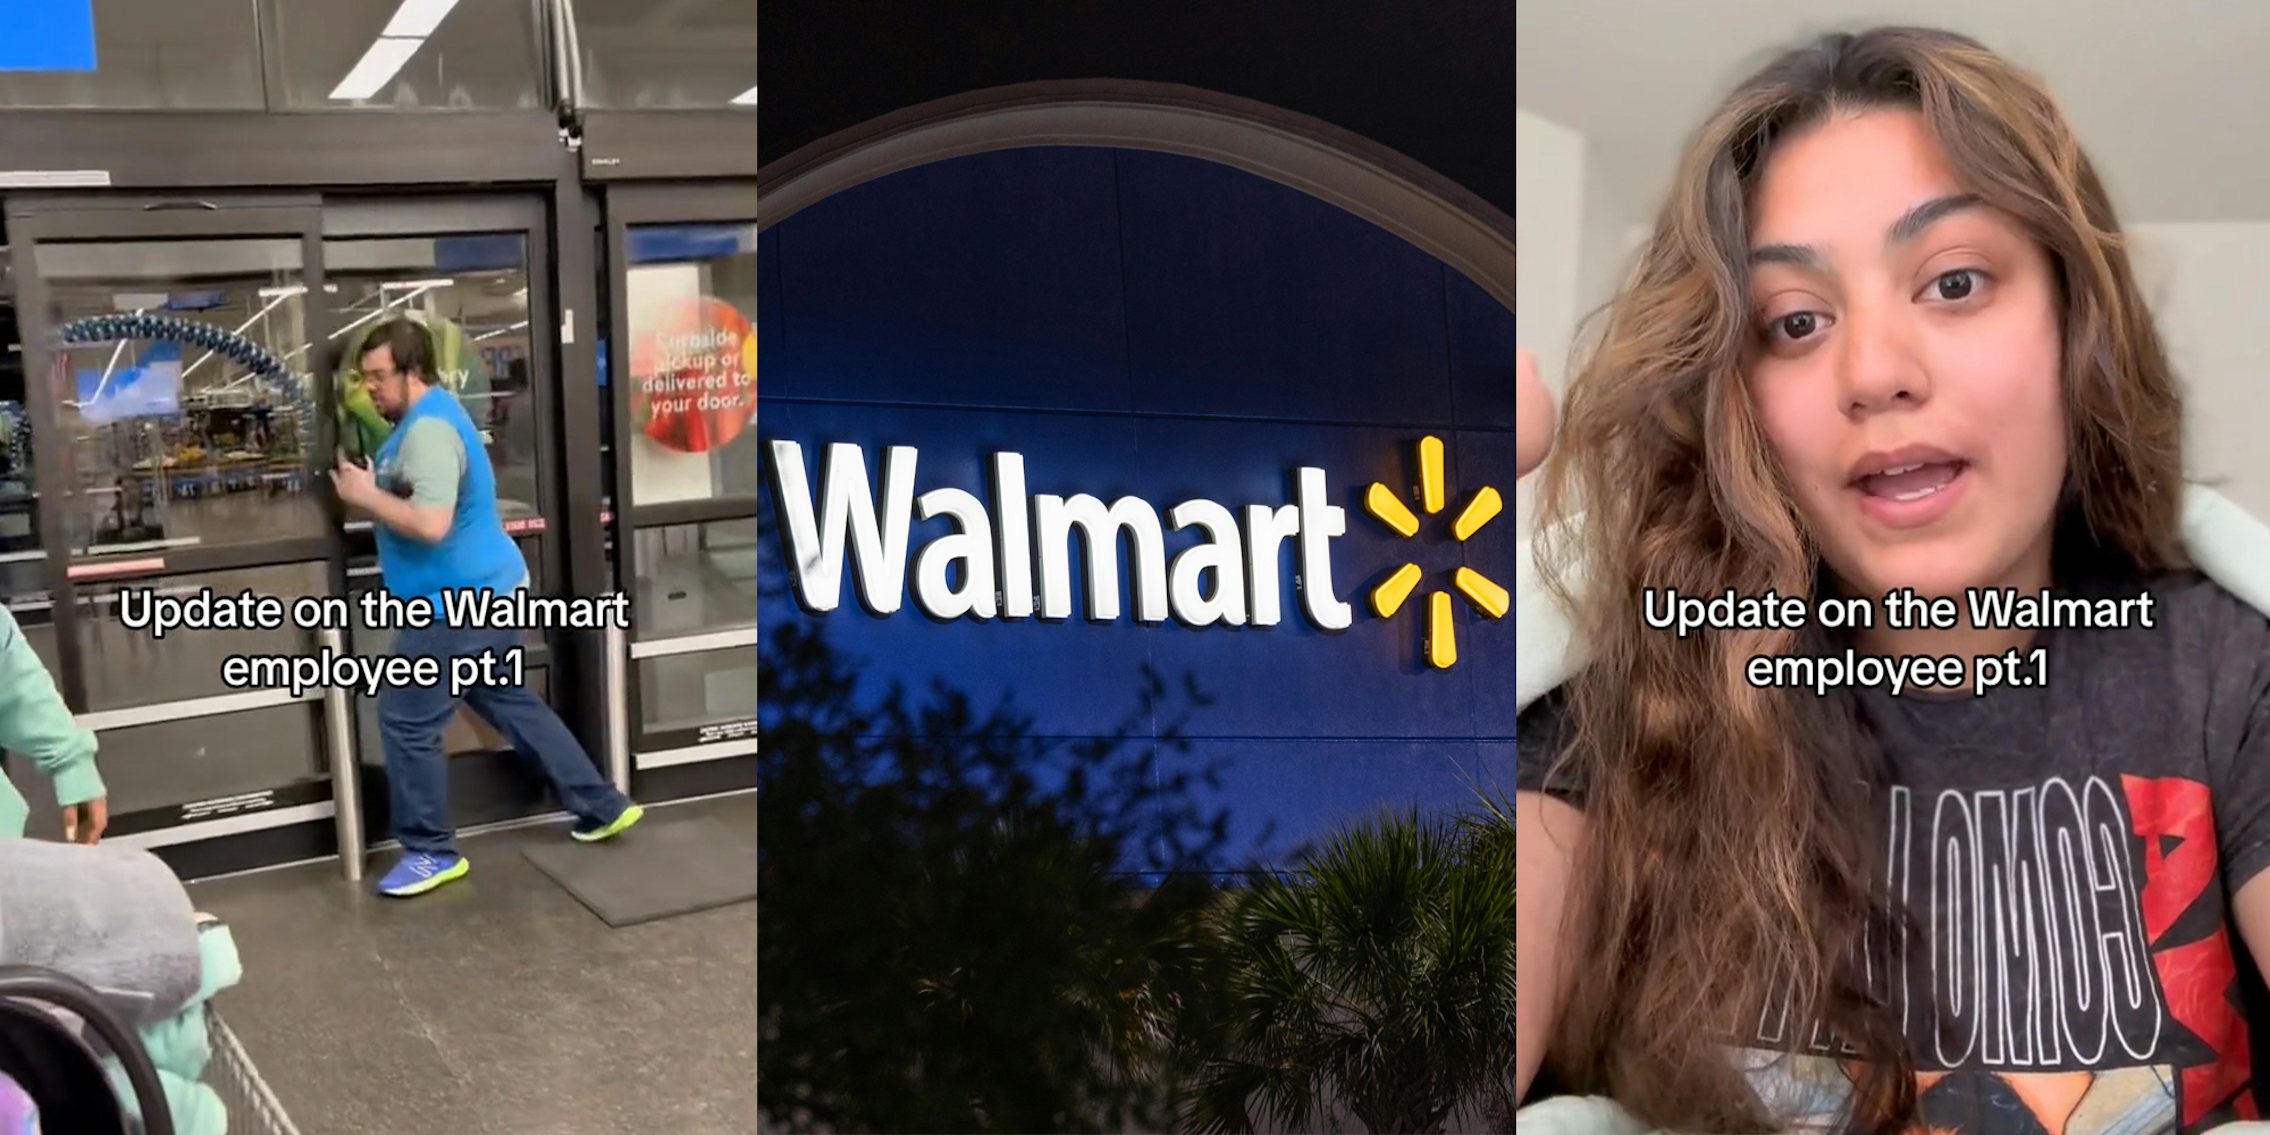 Walmart employee closing door with caption 'Update on the Walmart employee pt.1' (l) Walmart sign at night (c) Walmart shopper speaking with caption 'Update on the Walmart employee pt.1' (r)